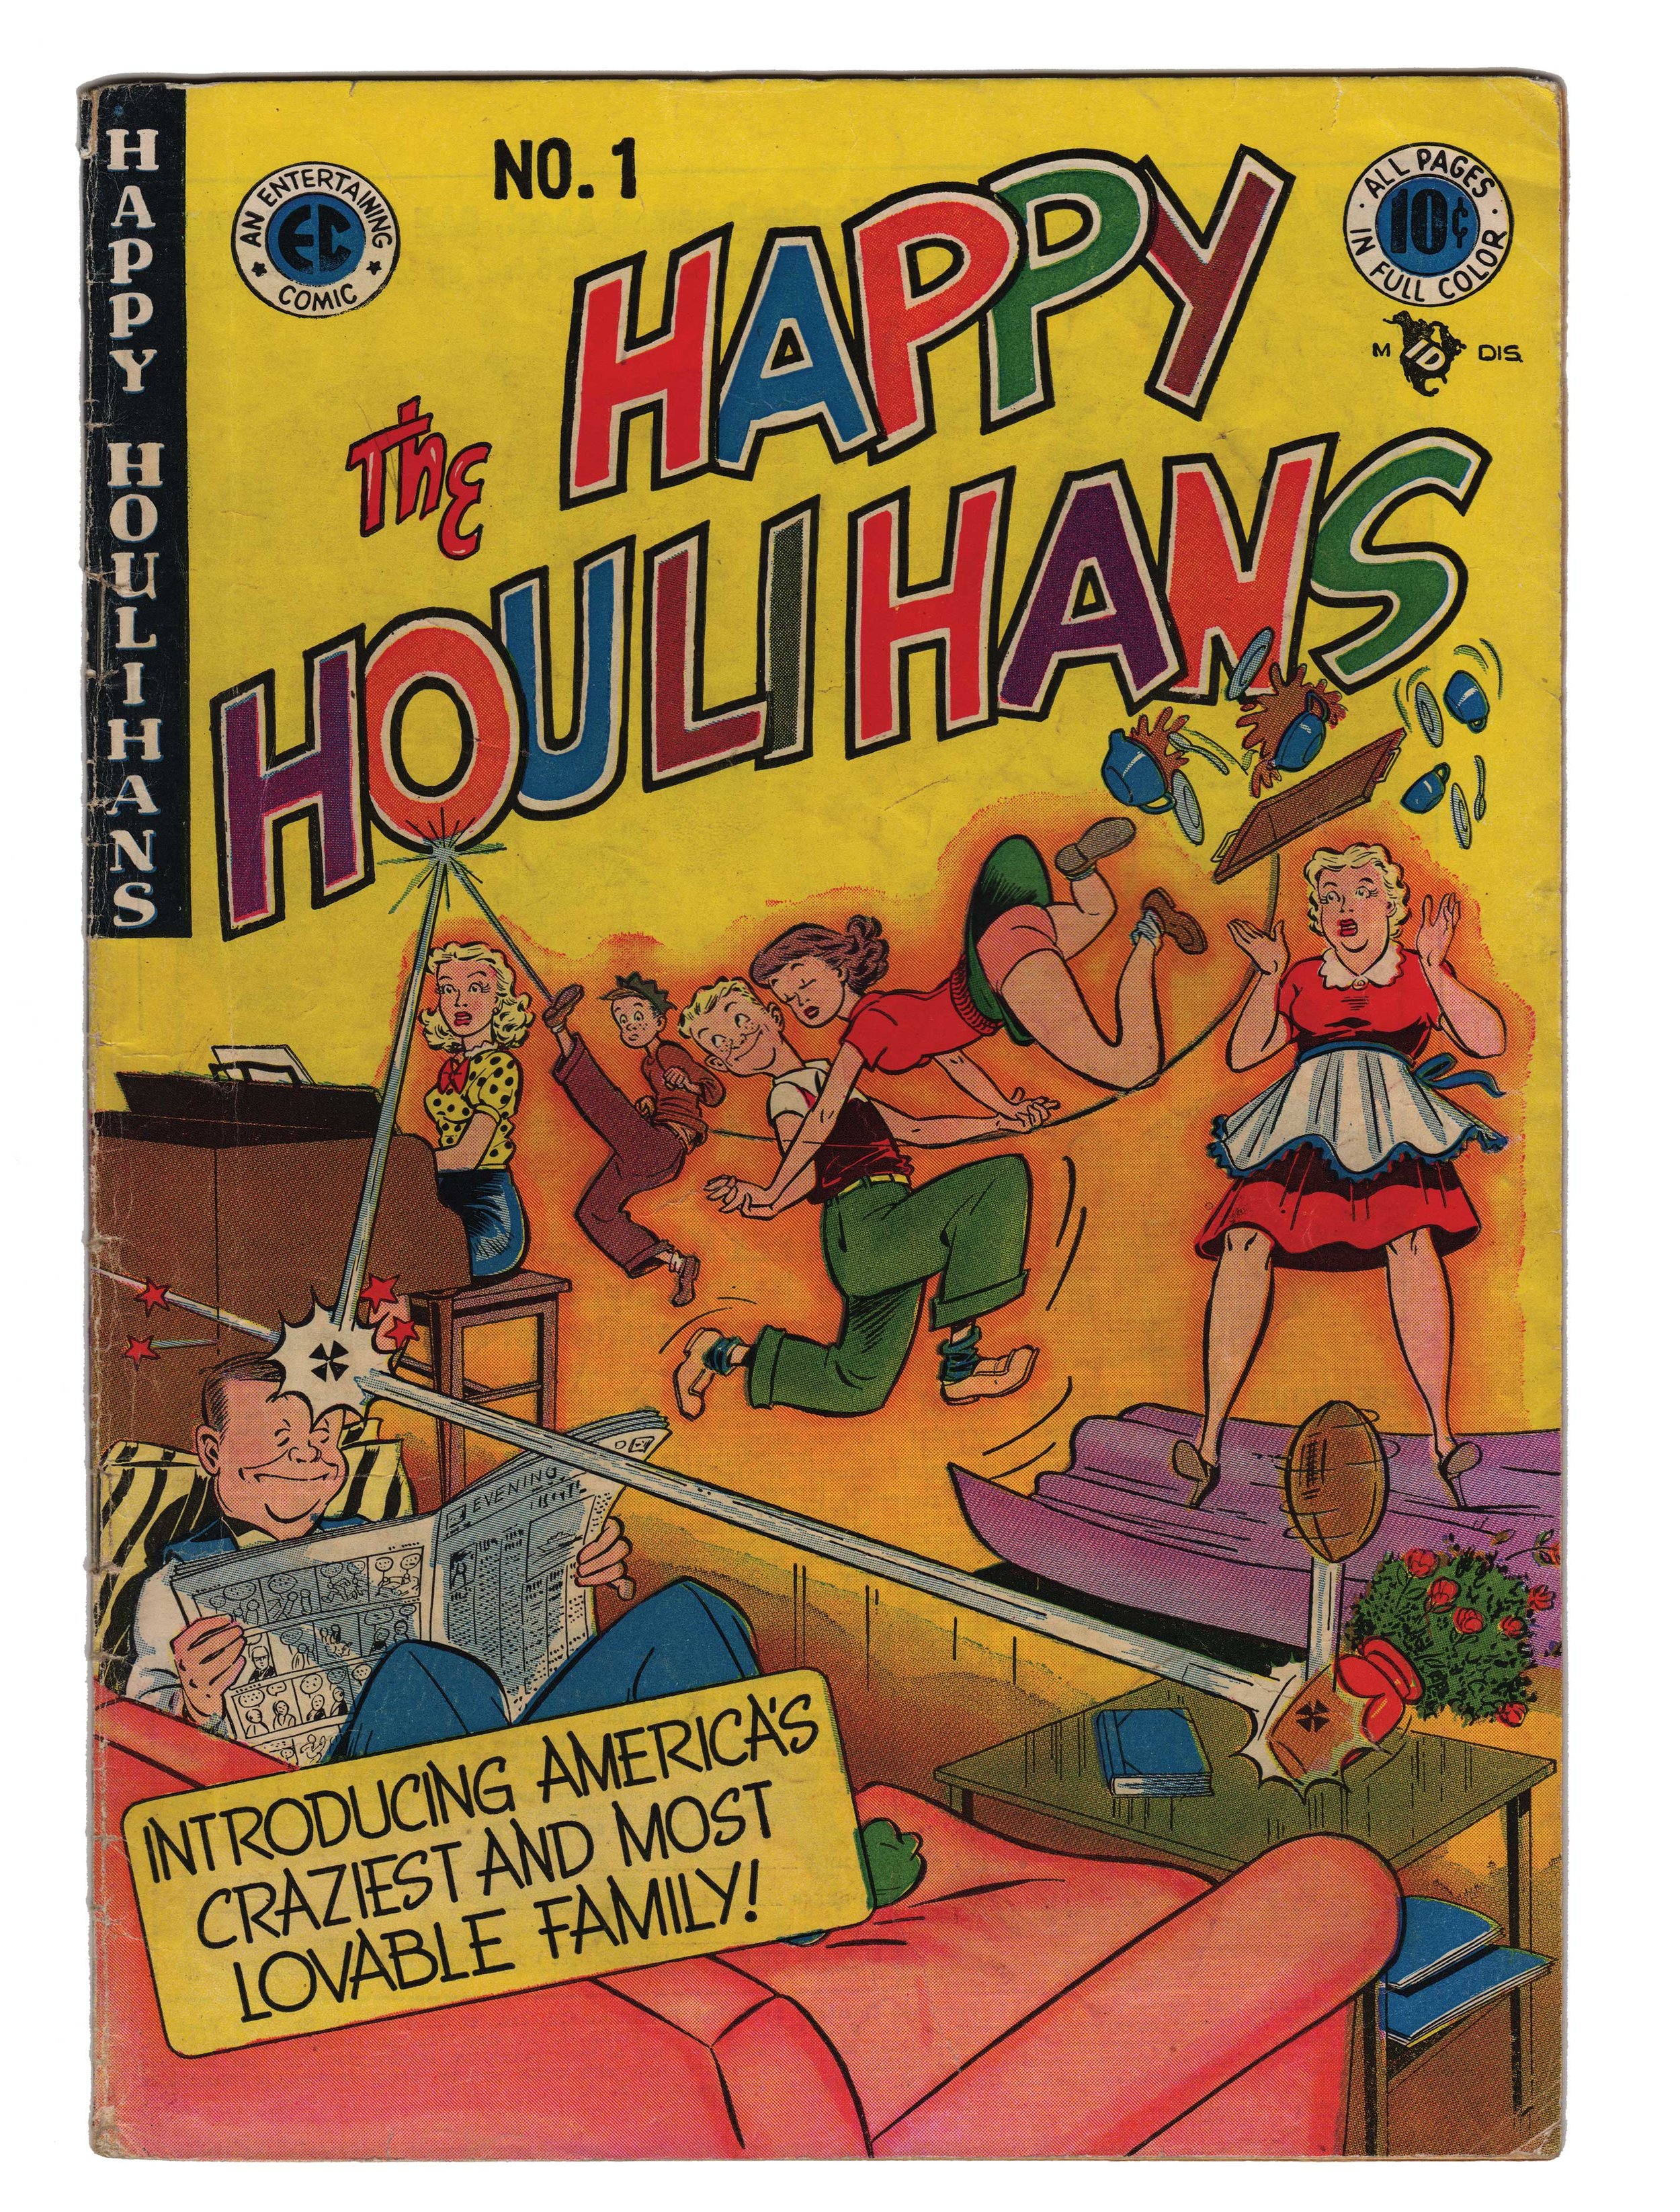 Happy-Houlihans-1.jpg